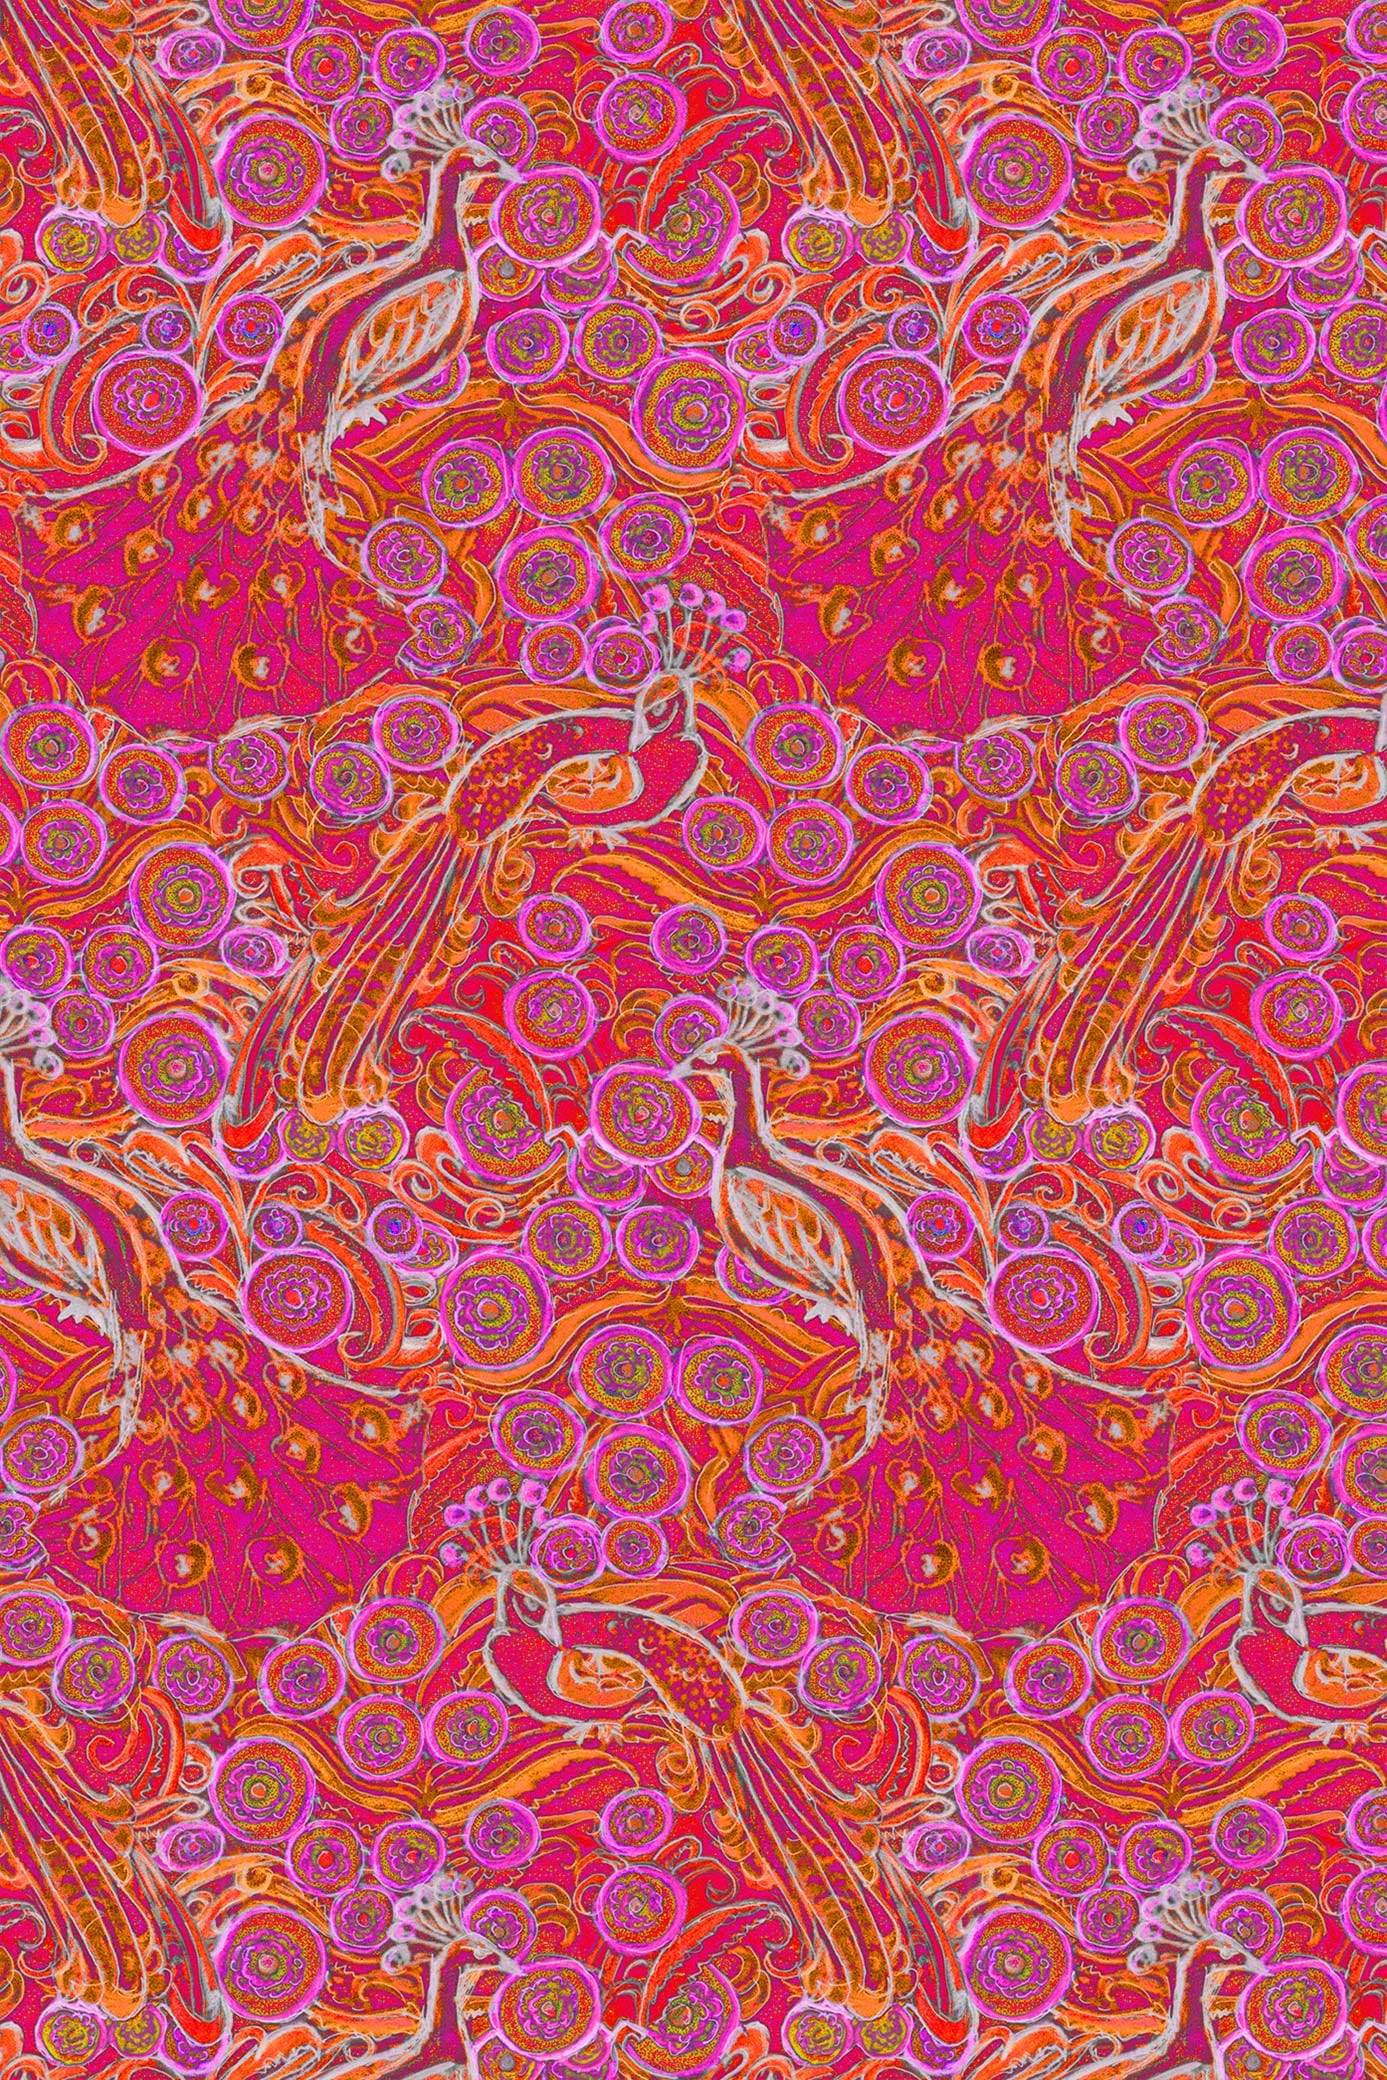 W.E.T. by Ines Schneider Dress Fiora / Pavone mode hamburg print sommerkleid Unique Prints Summer Dress Handdesignierte Prints Print